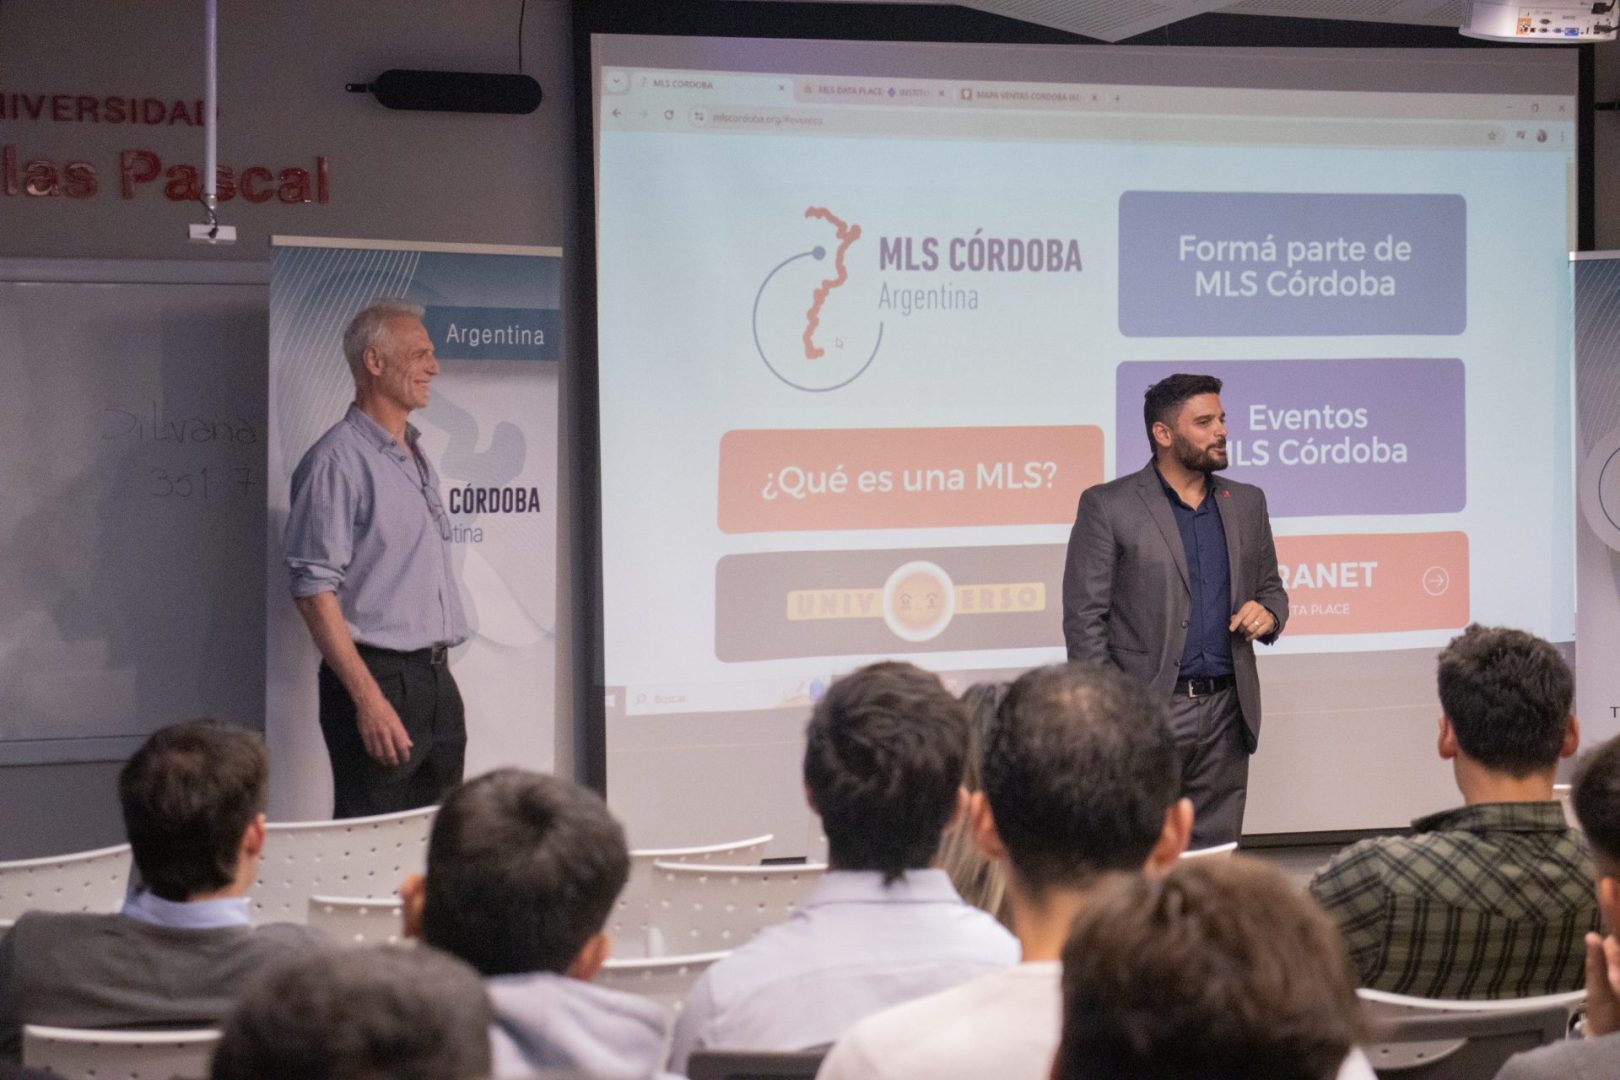 Gestión Inmobiliaria: MLS Córdoba capacitó a estudiantes en el uso de herramientas digitales